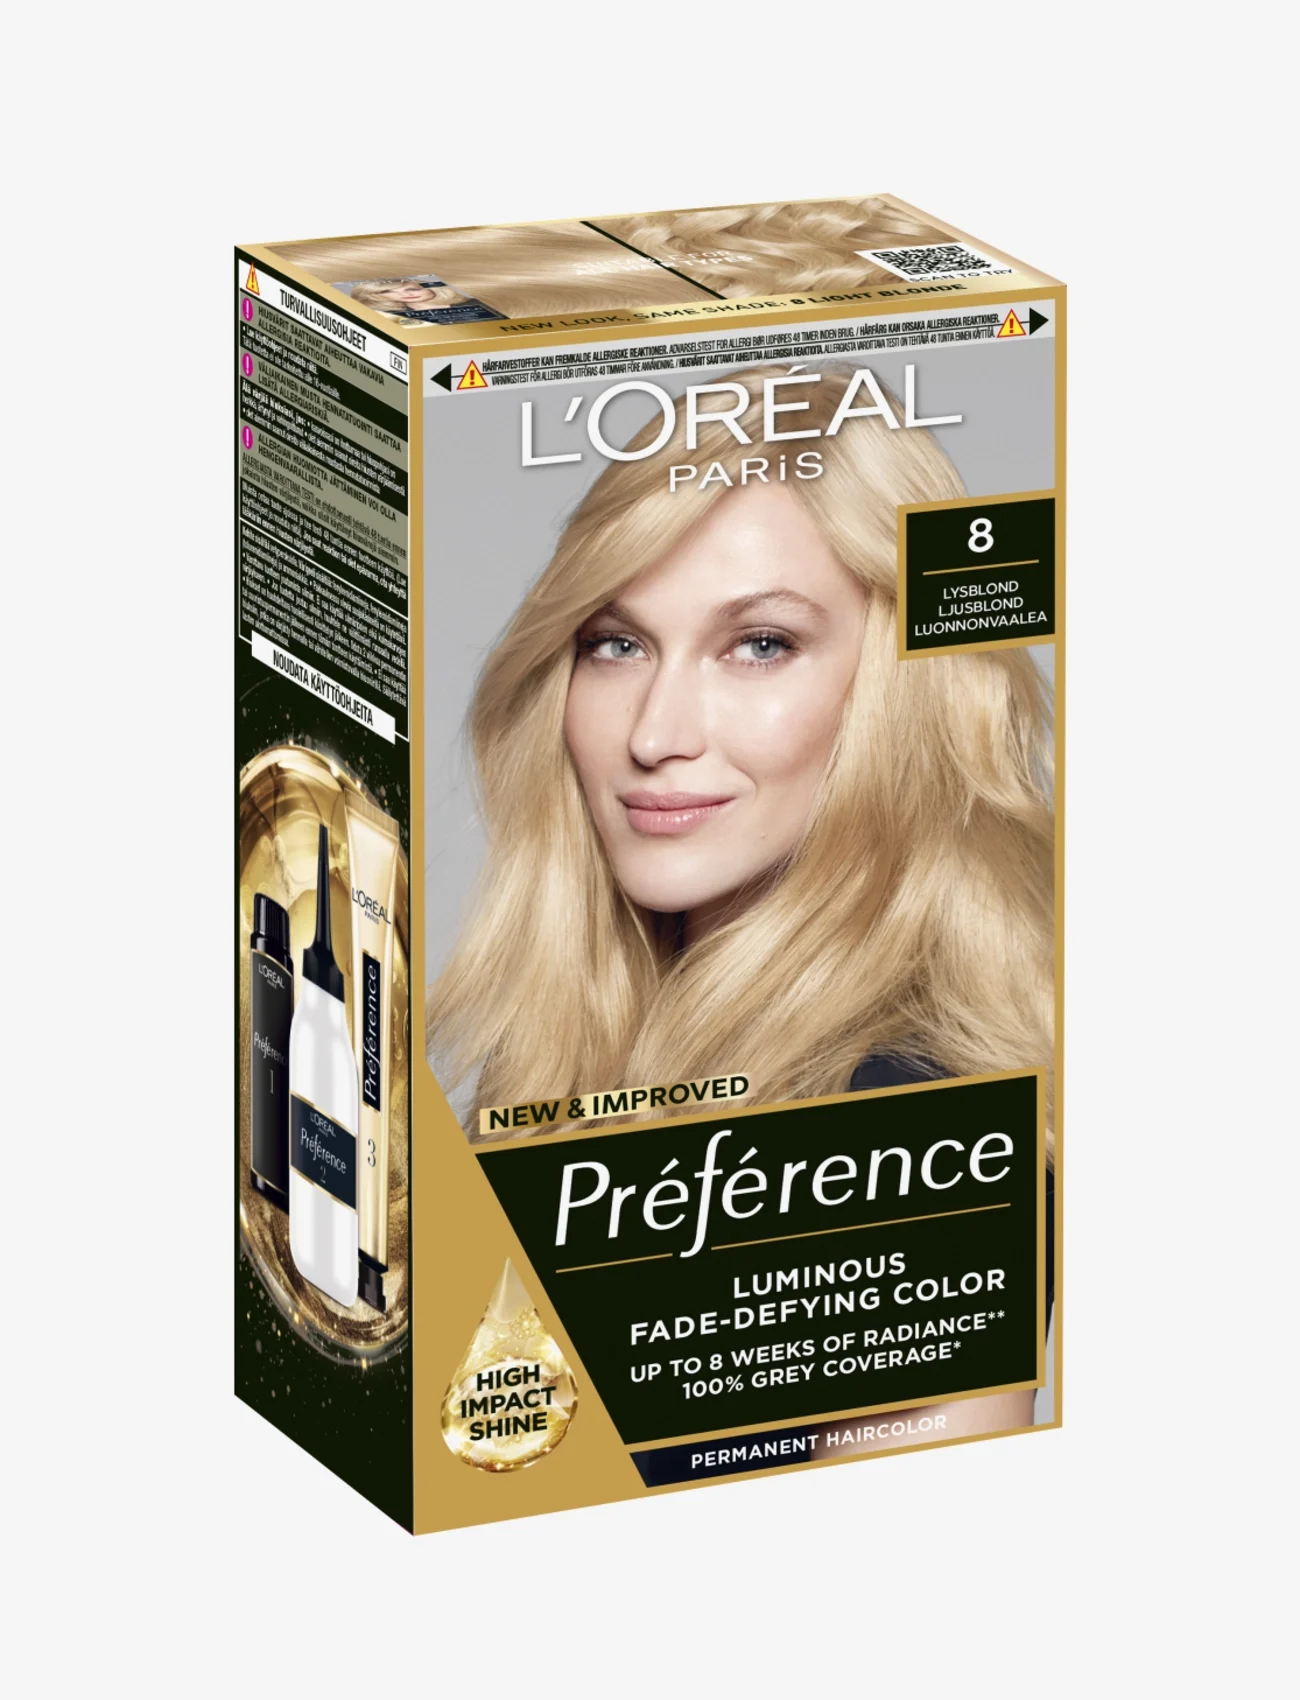 L'Oréal Paris - Luminous, high-impact shine & fade-defying hair color for up to 8 weeks. - färginpackningar - 8 california - 1